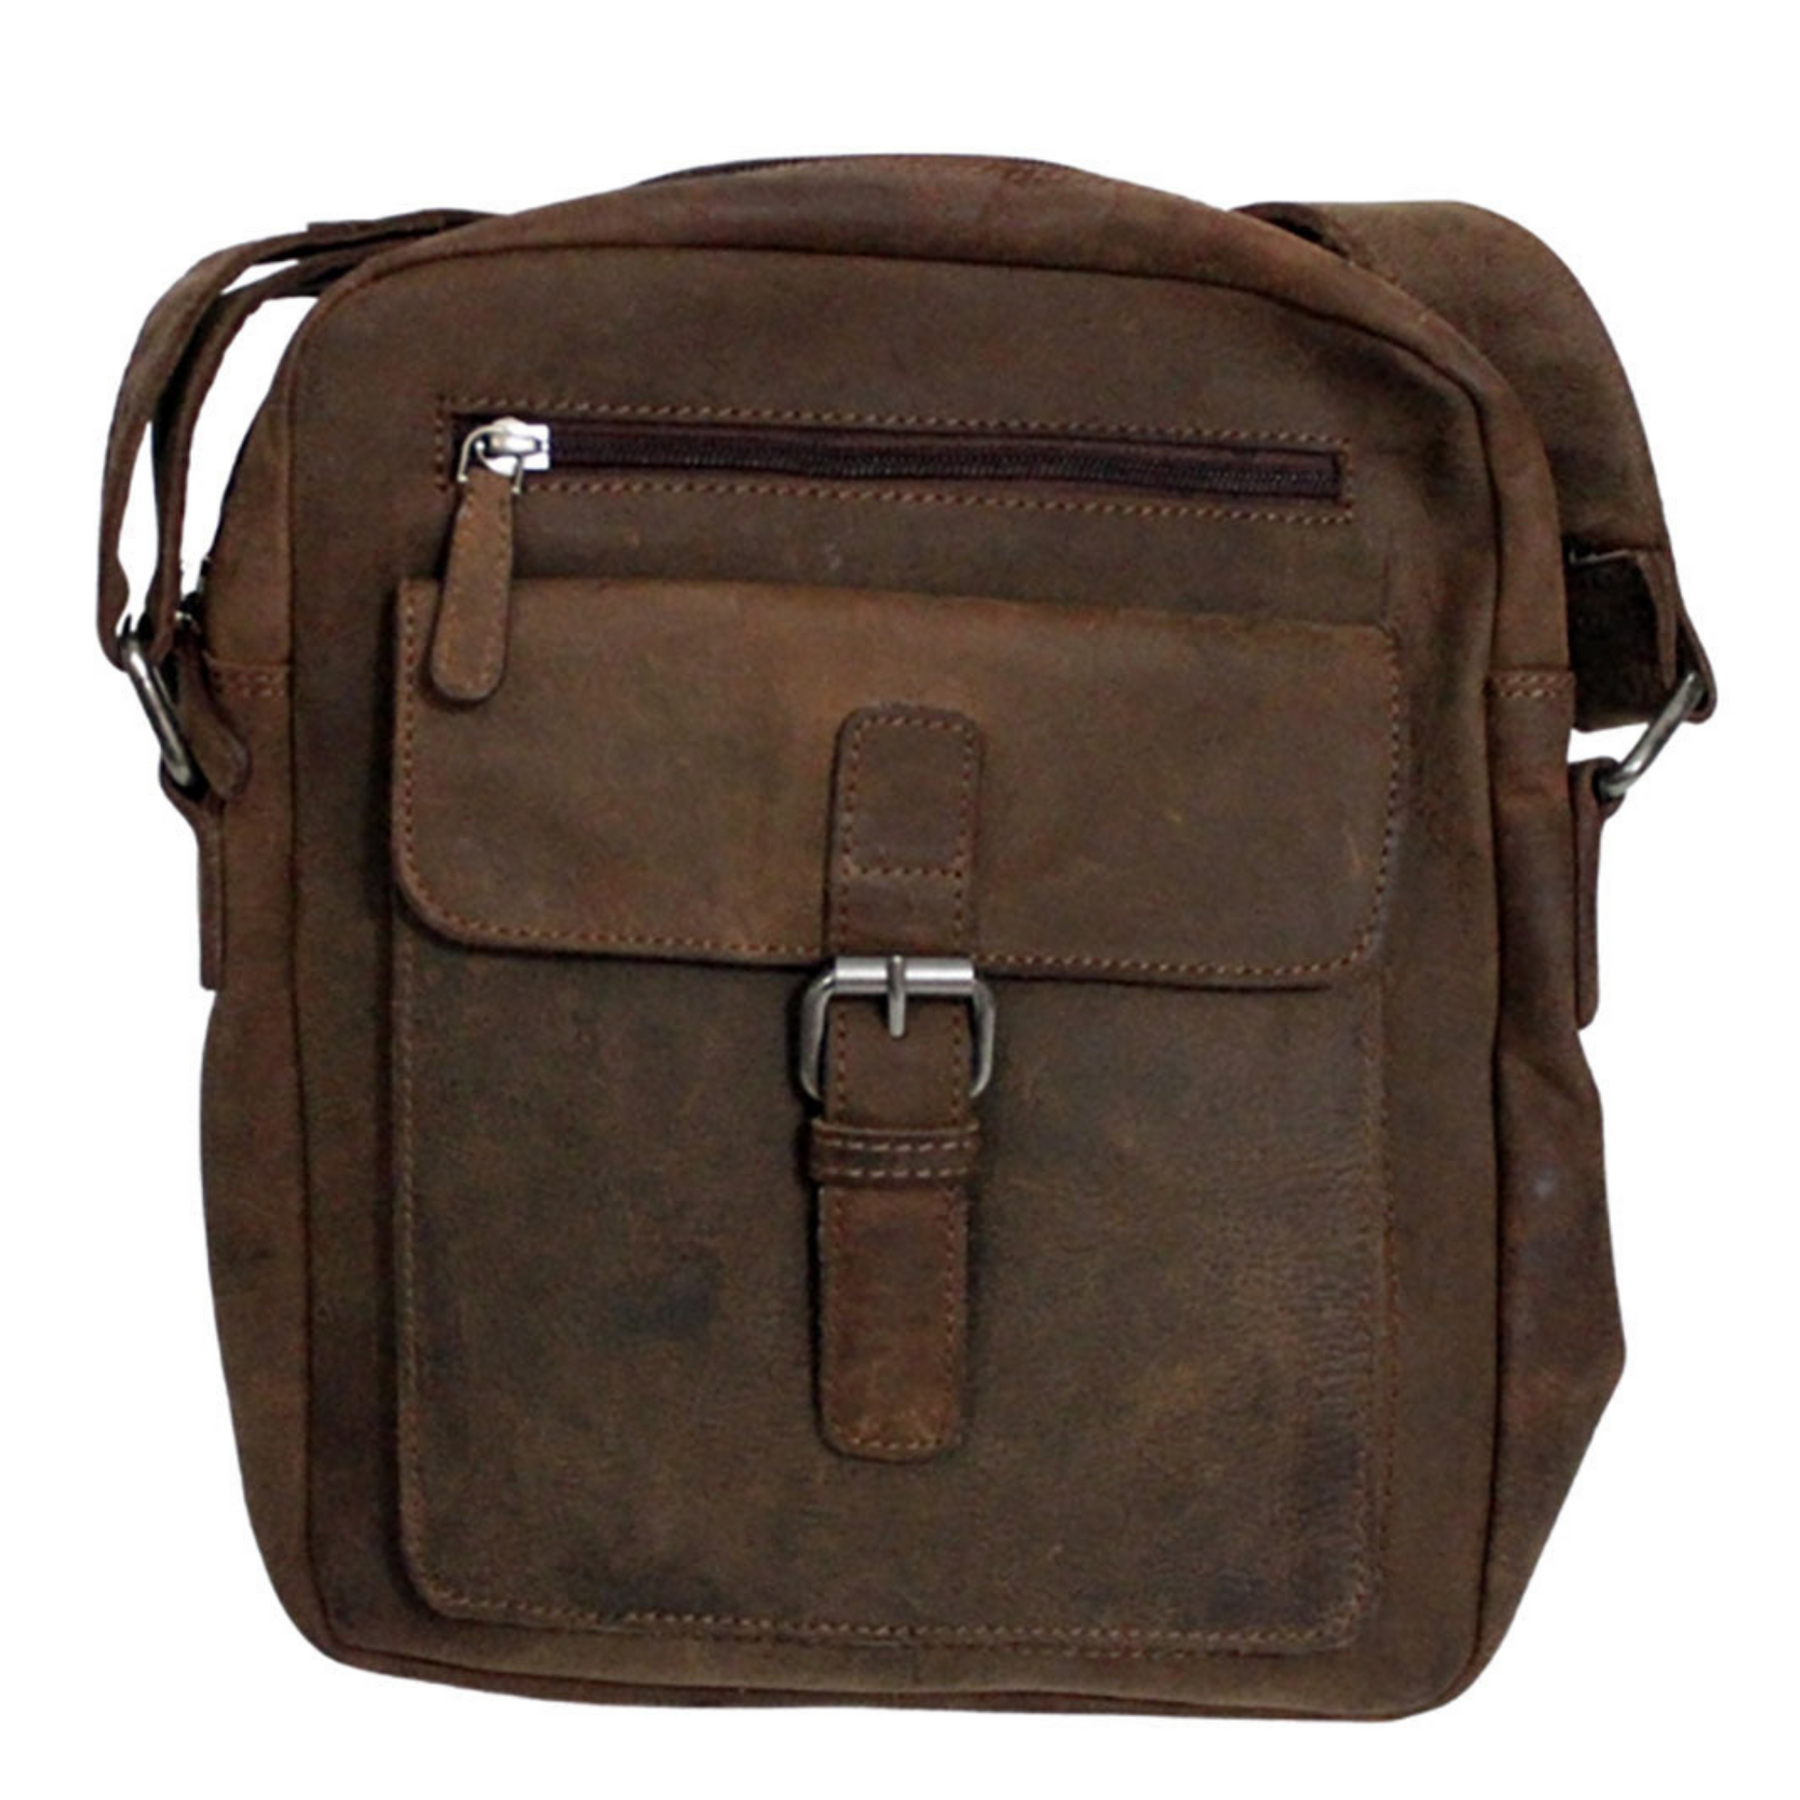 Tandy Leather Bison Messenger Bag Kit 44066-16